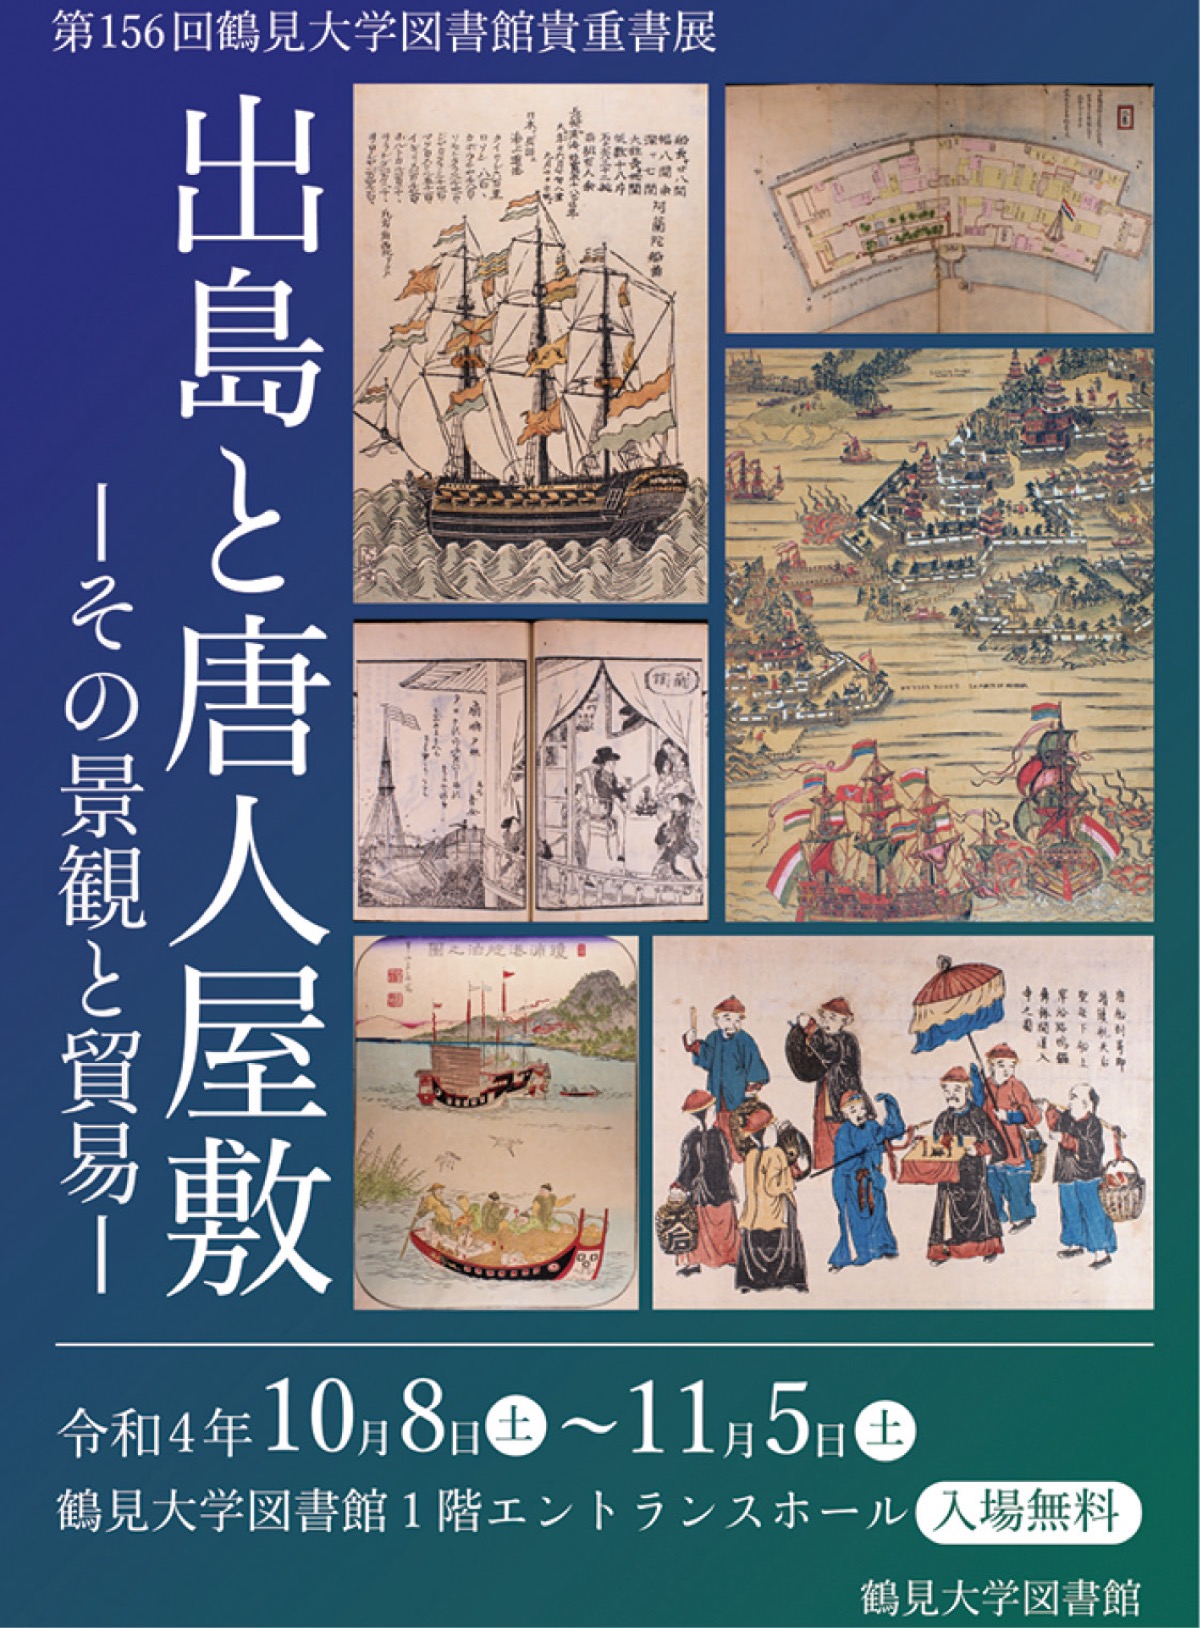 長崎貿易の貴重書展 鶴見大学図書館で | 鶴見区 | タウンニュース